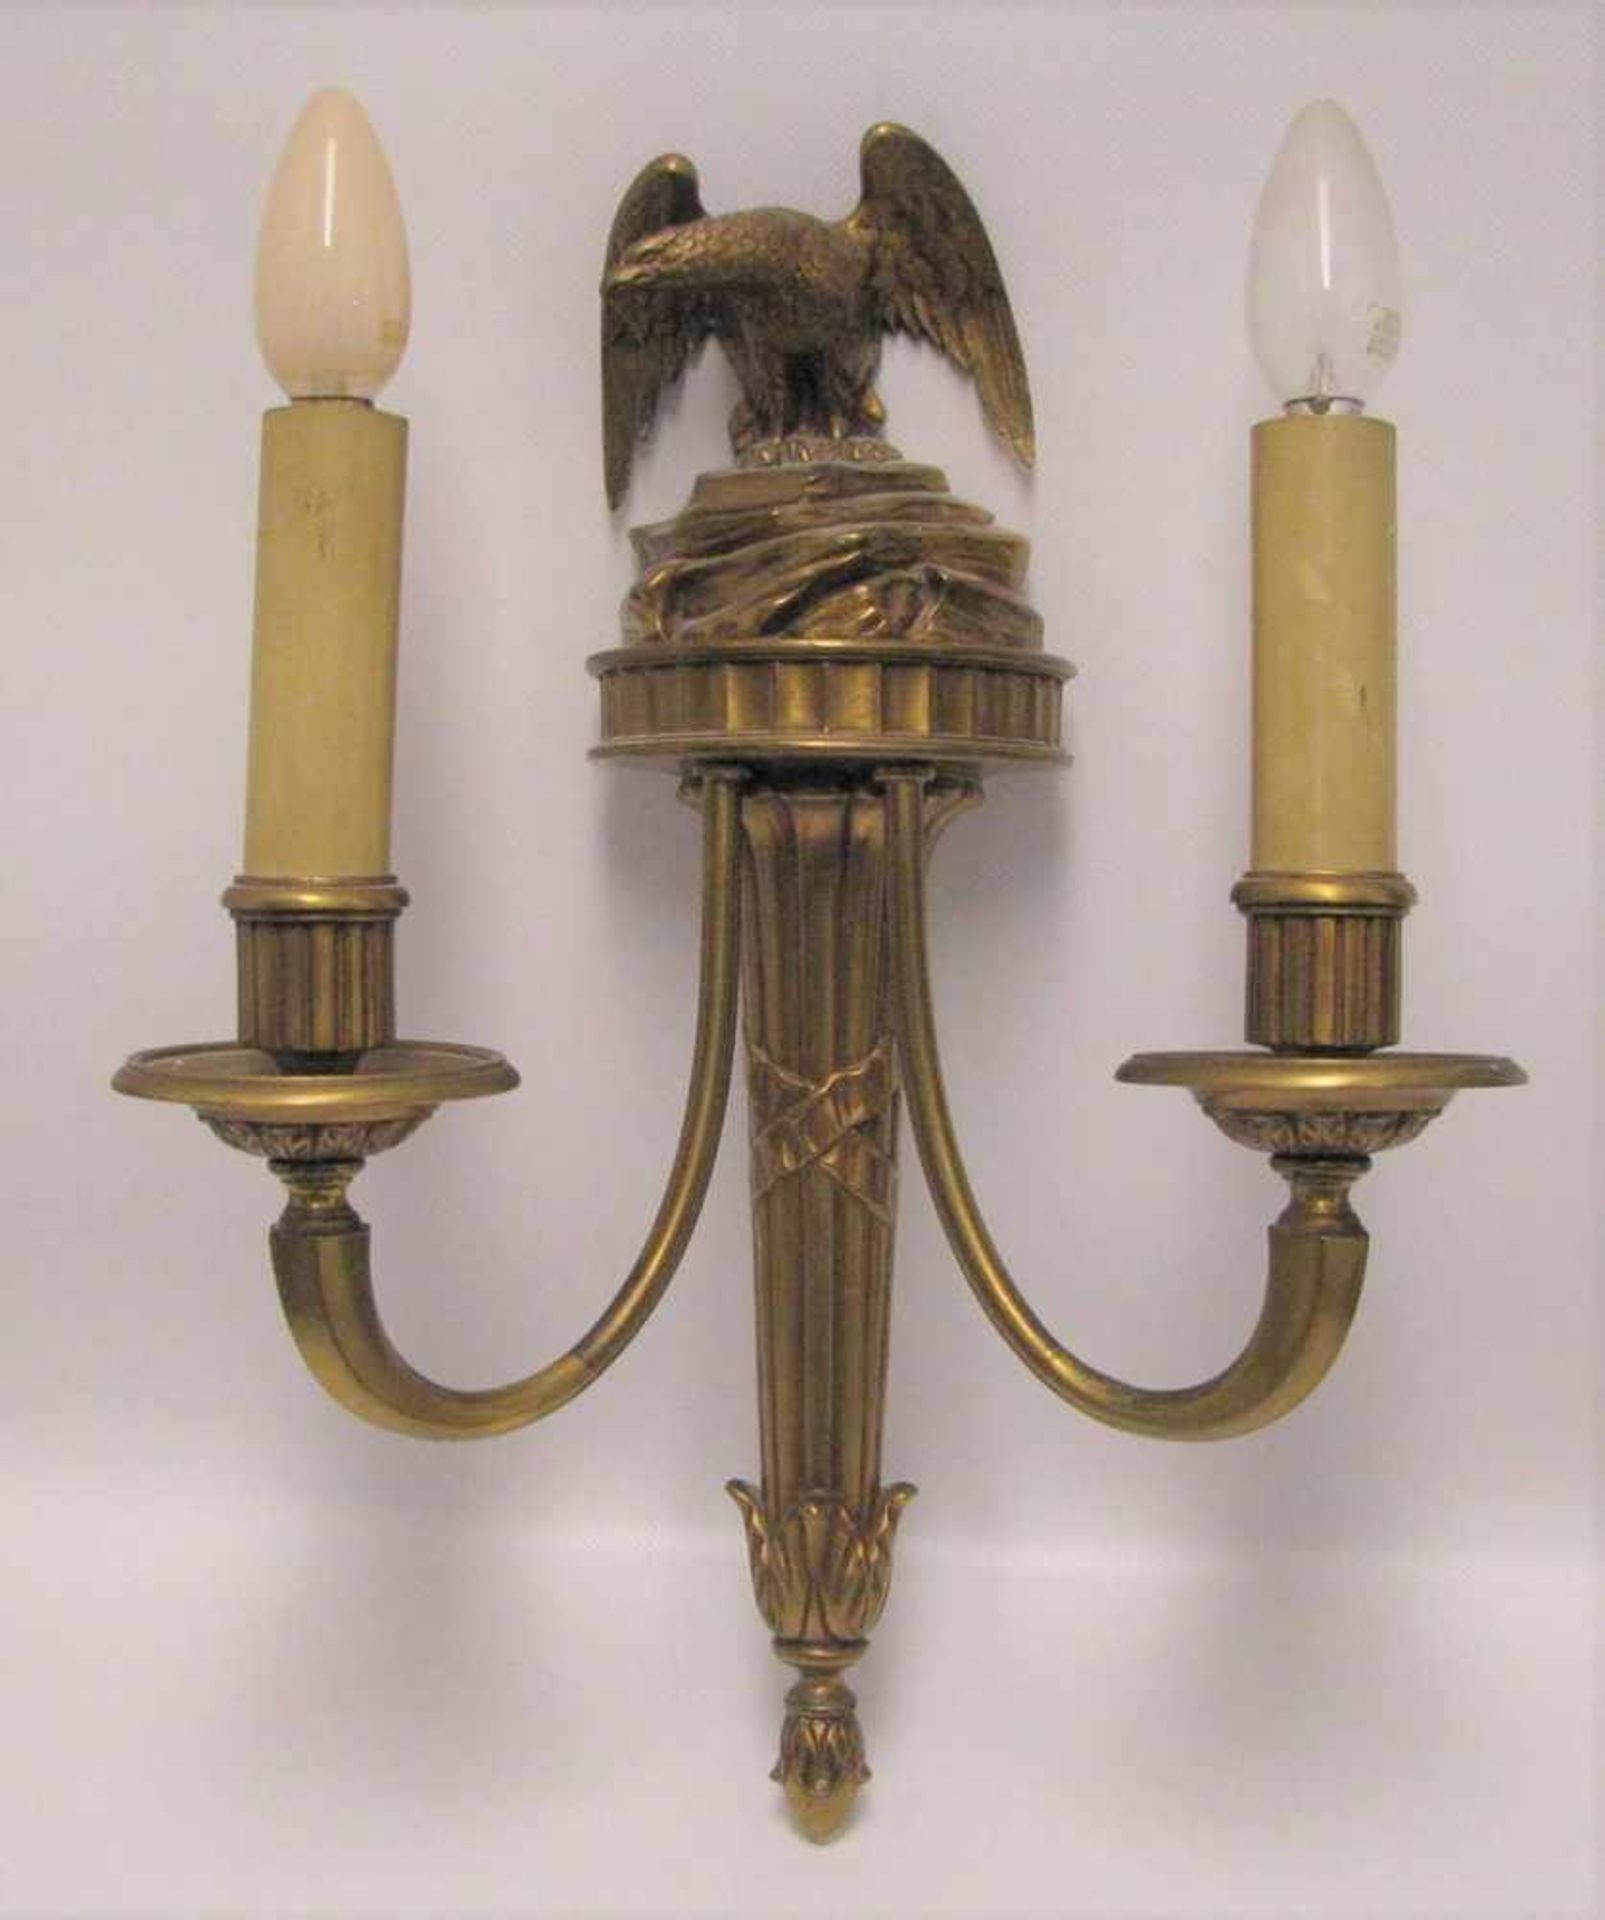 Wandkerzenleuchter, Napoleonischer Stil, Bronze, Adlerfigur, 2-flammig, 42 x 31 x 16 cm.- - -19.00 %